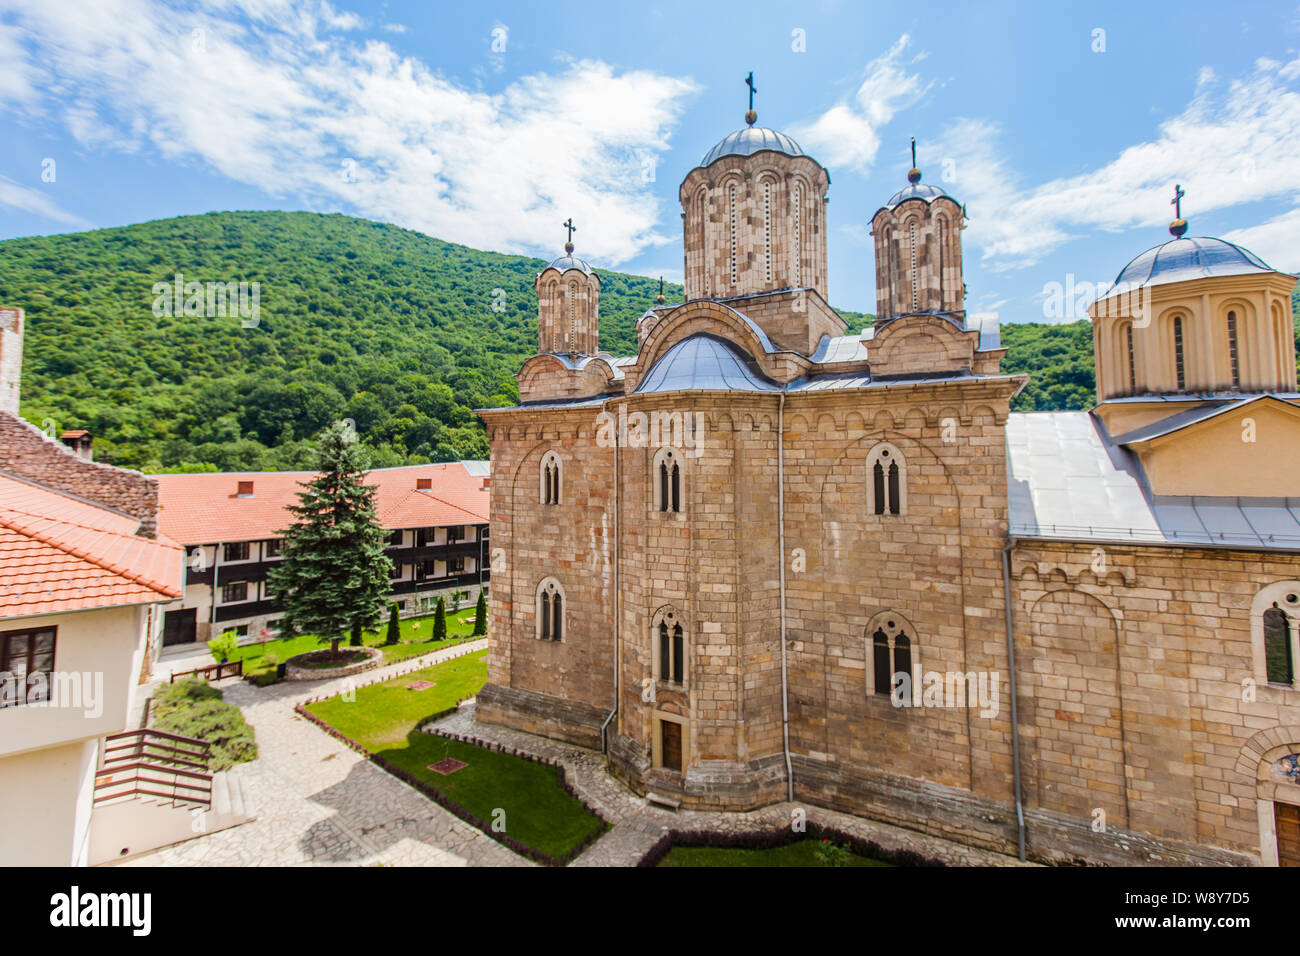 Orthodoxe serbe médiévale Manasija Resava (monastère), l'église de la Sainte Trinité, en Serbie, fondée par Despot Stefan Lazarević. Banque D'Images